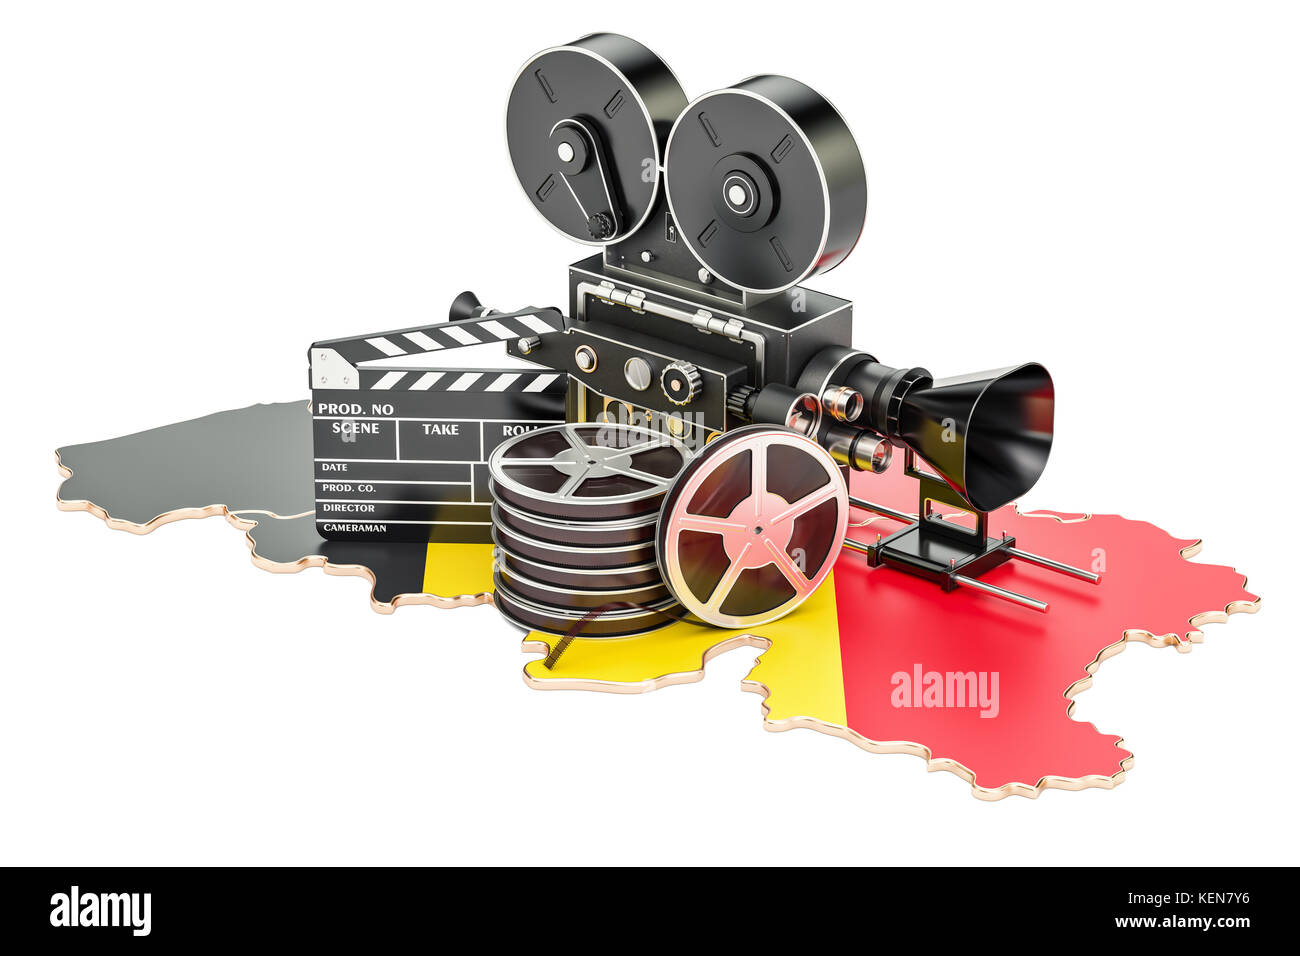 Belgische Kinematographie, Filmindustrie Konzept. 3D-Rendering auf weißem Hintergrund Stockfoto